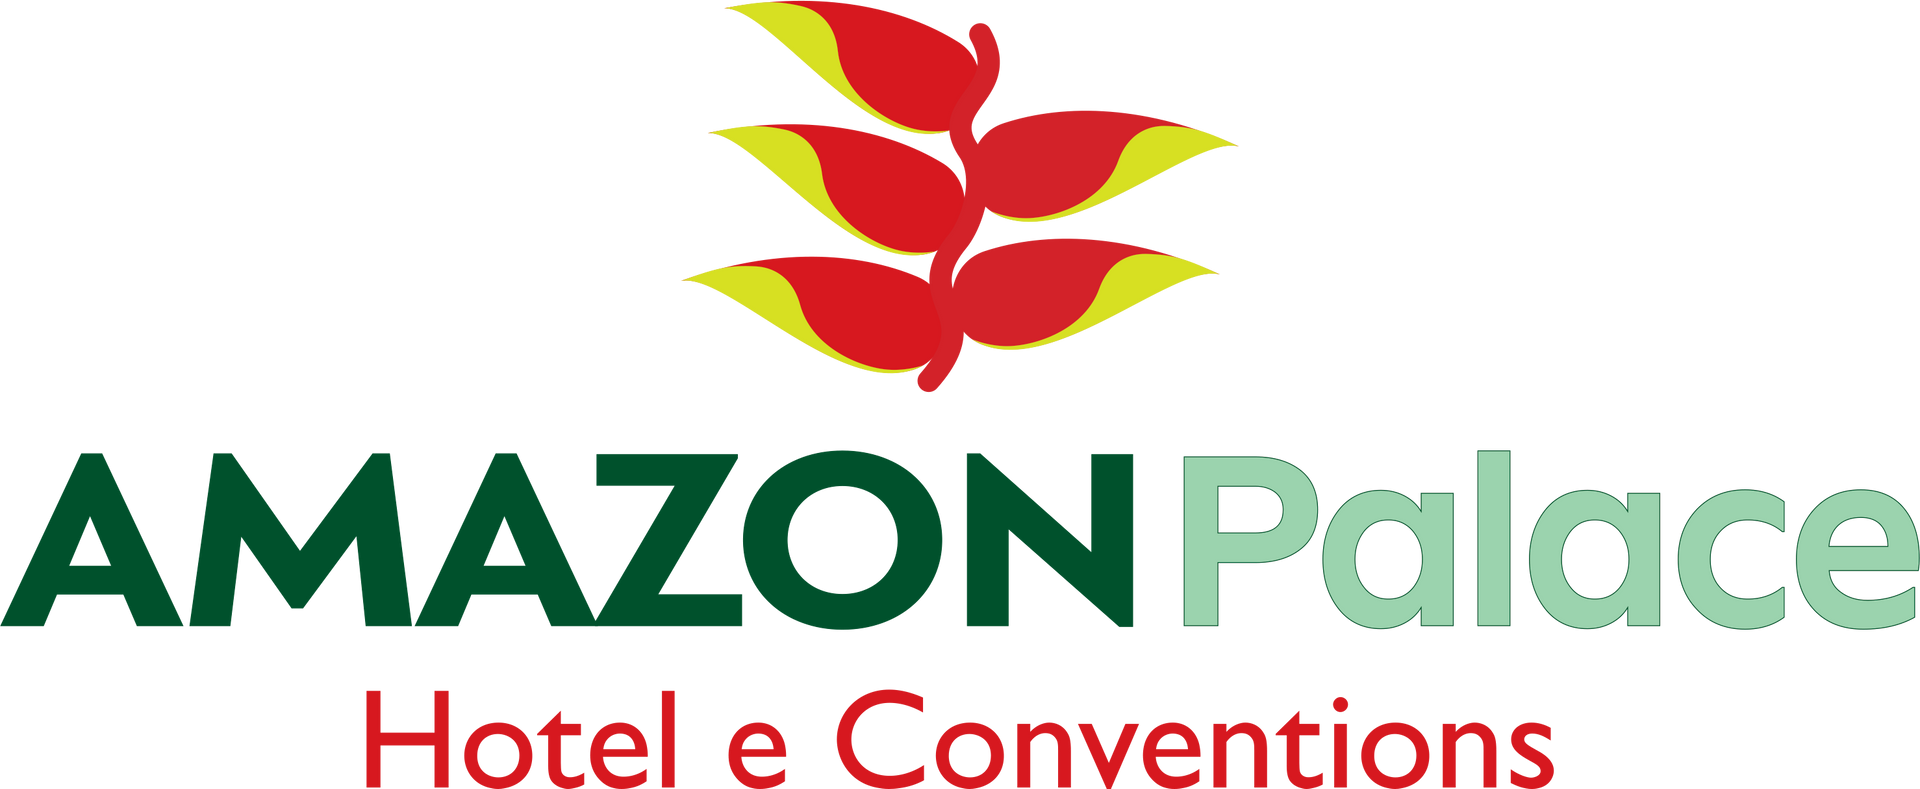 Logo Amazon Palace Hotel